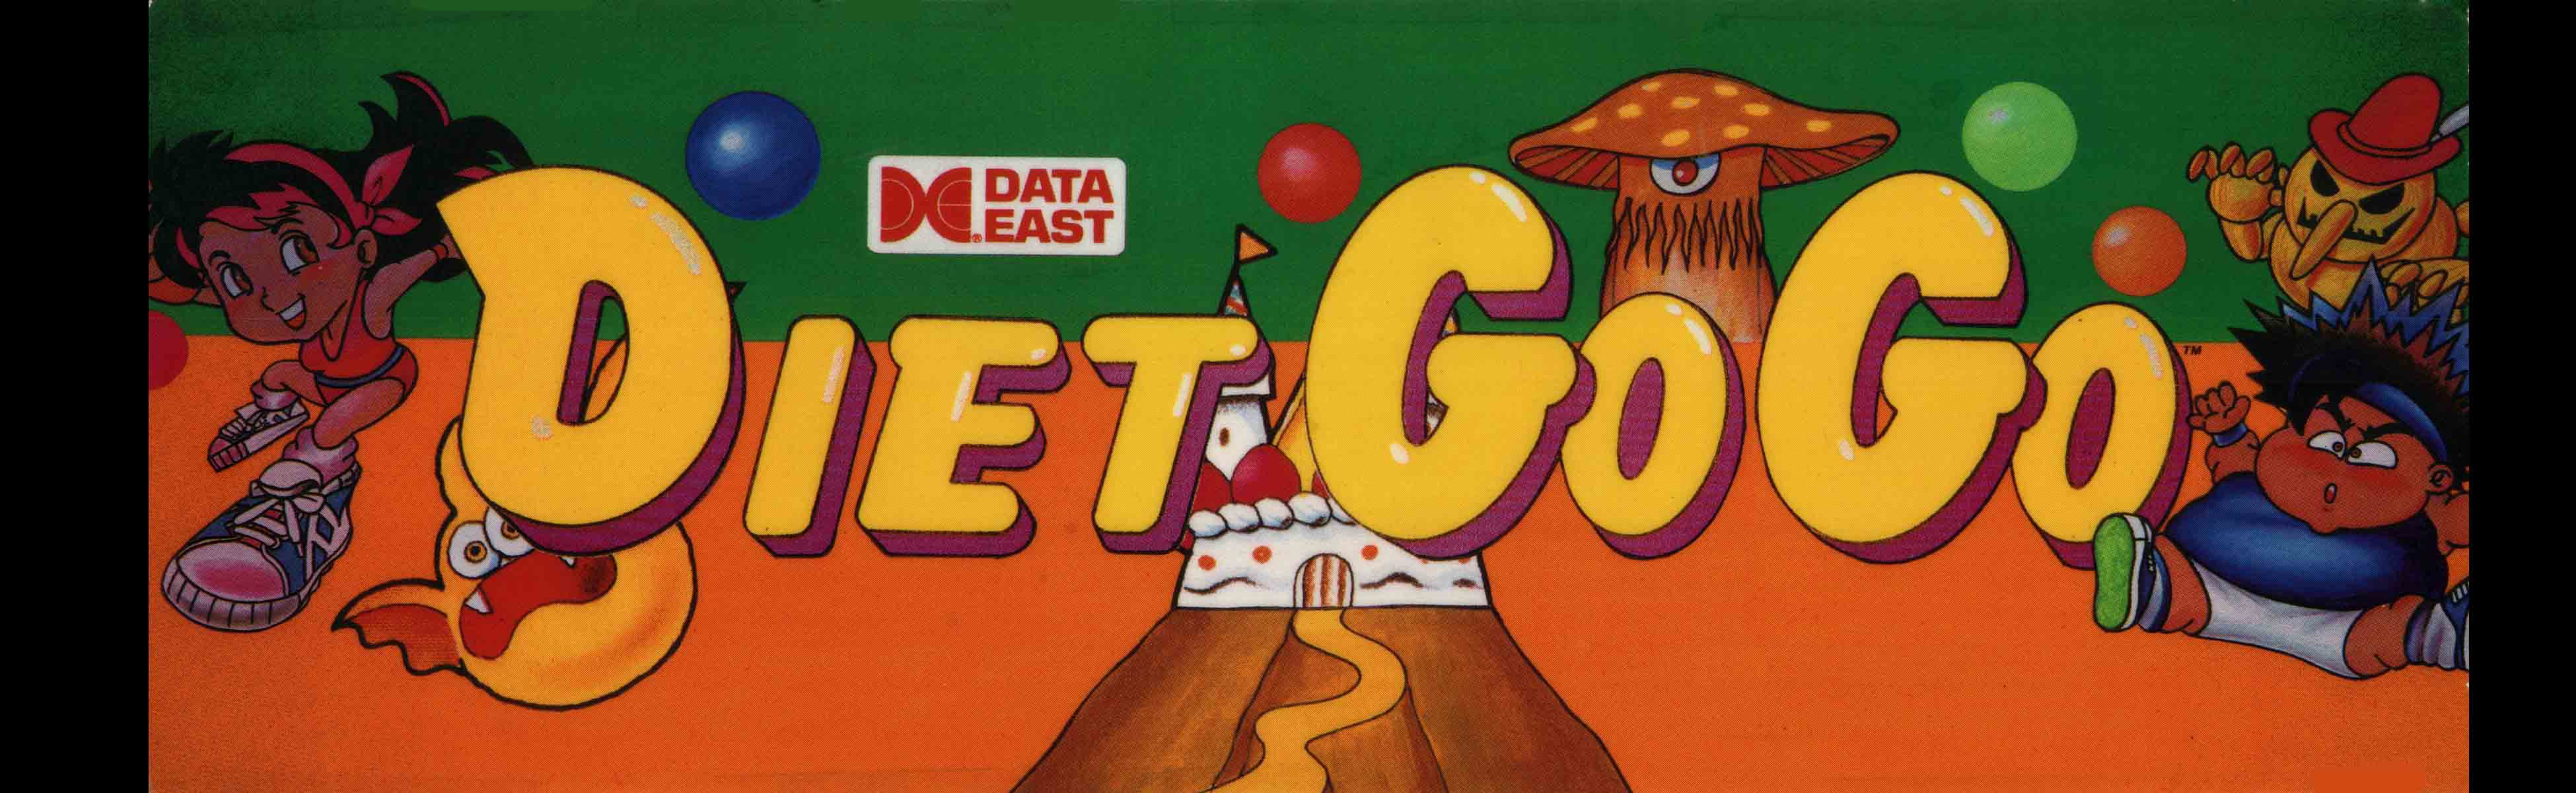 Diet Go Go Arcade Marquee 26 X 8 Arcade Marquee Dot Com